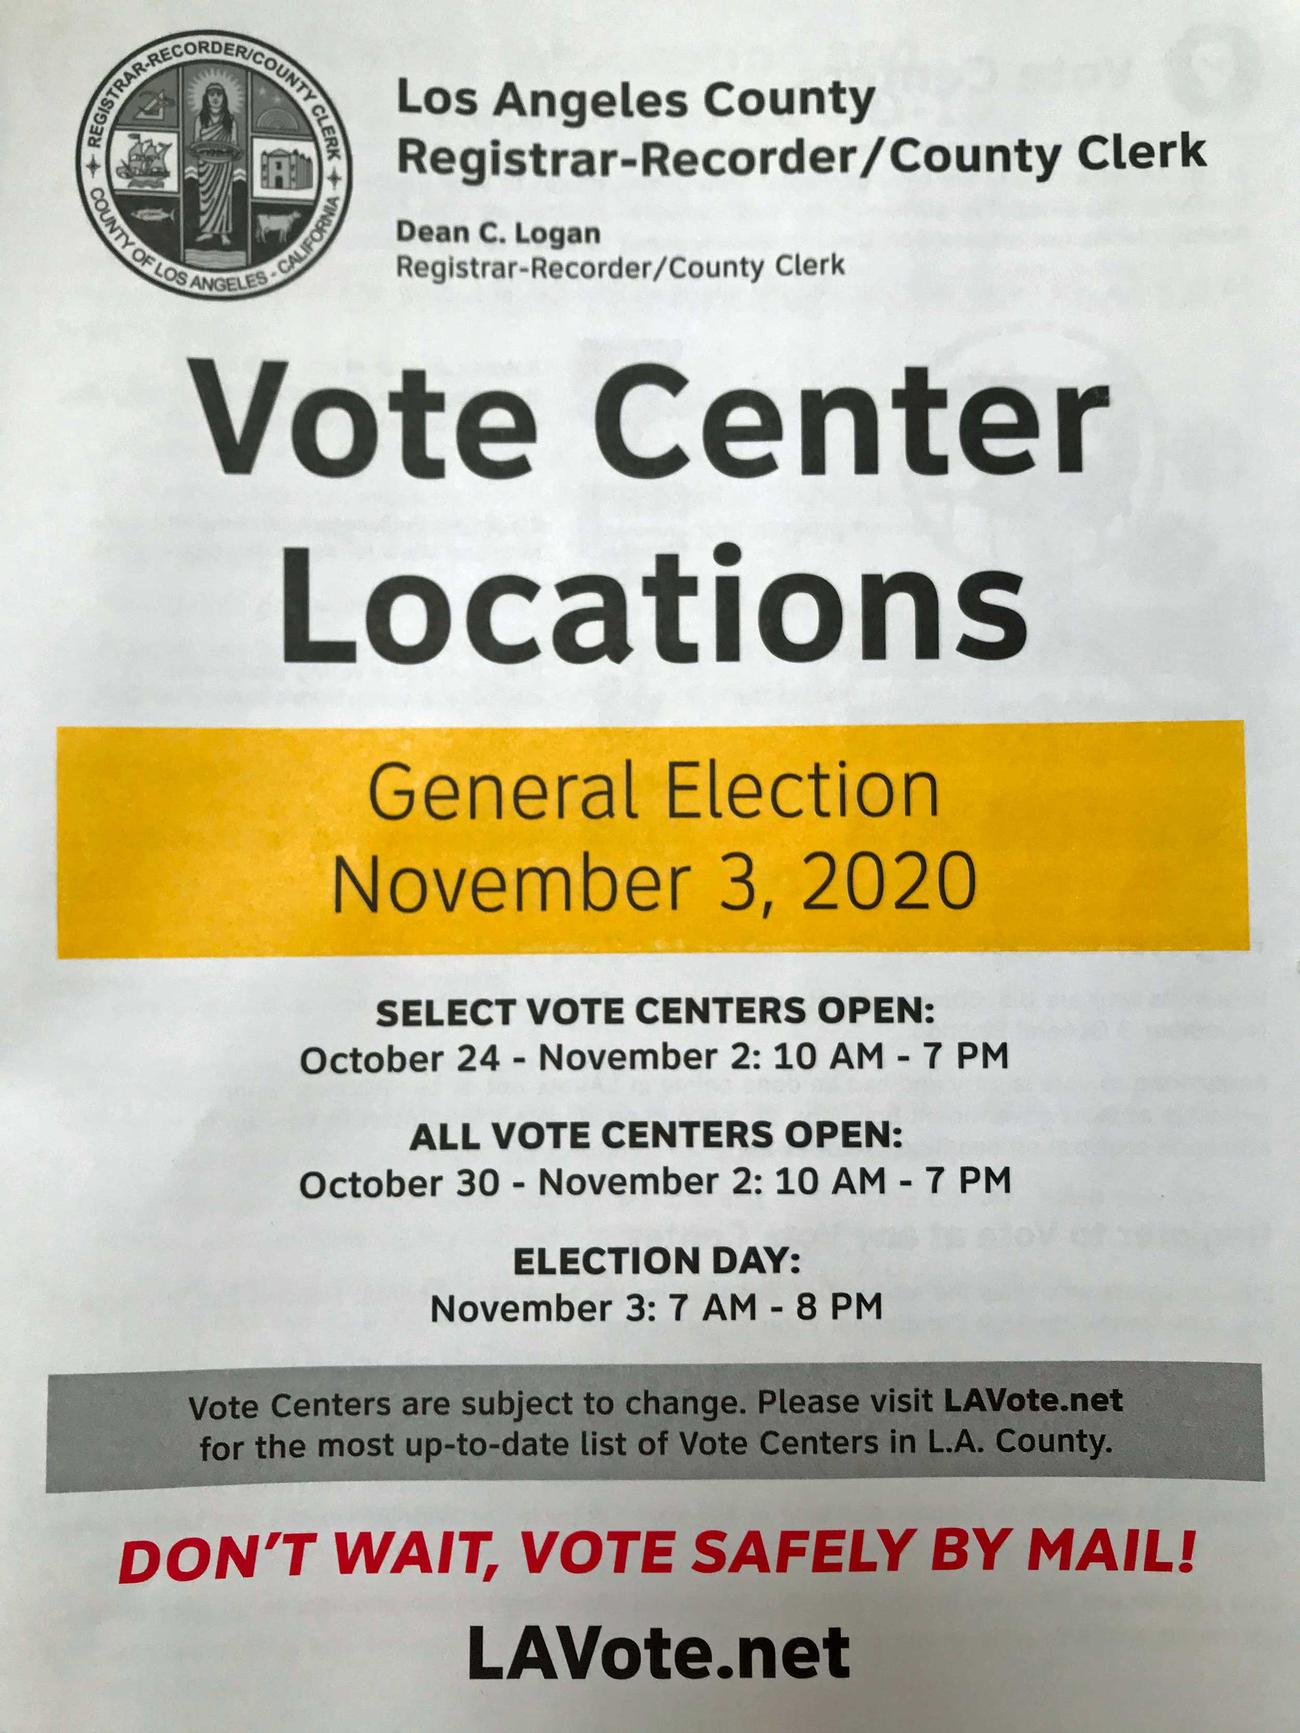 20ページを超える投票所の一覧が掲載されたLA郡の冊子。有権者はここに掲載された投票場から好きな場所を選んで投票に行くことができます